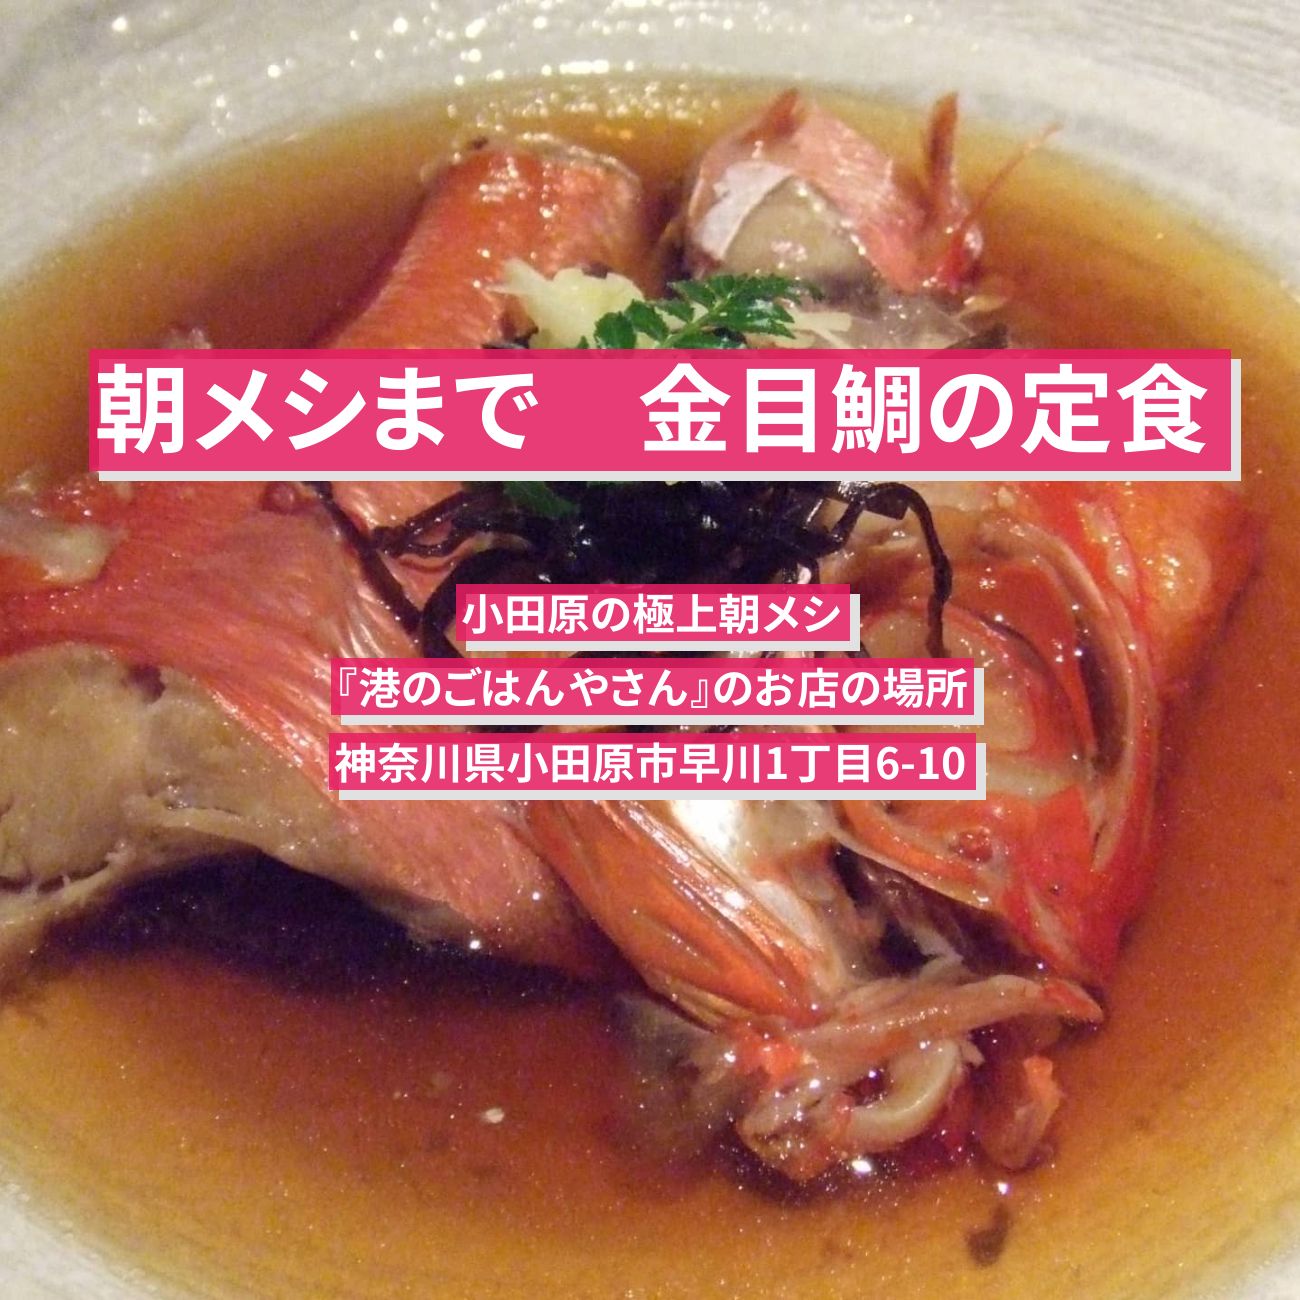 【朝メシまで】金目鯛の煮付け定食『港のごはんやさん』小田原の極上朝メシのお店の場所